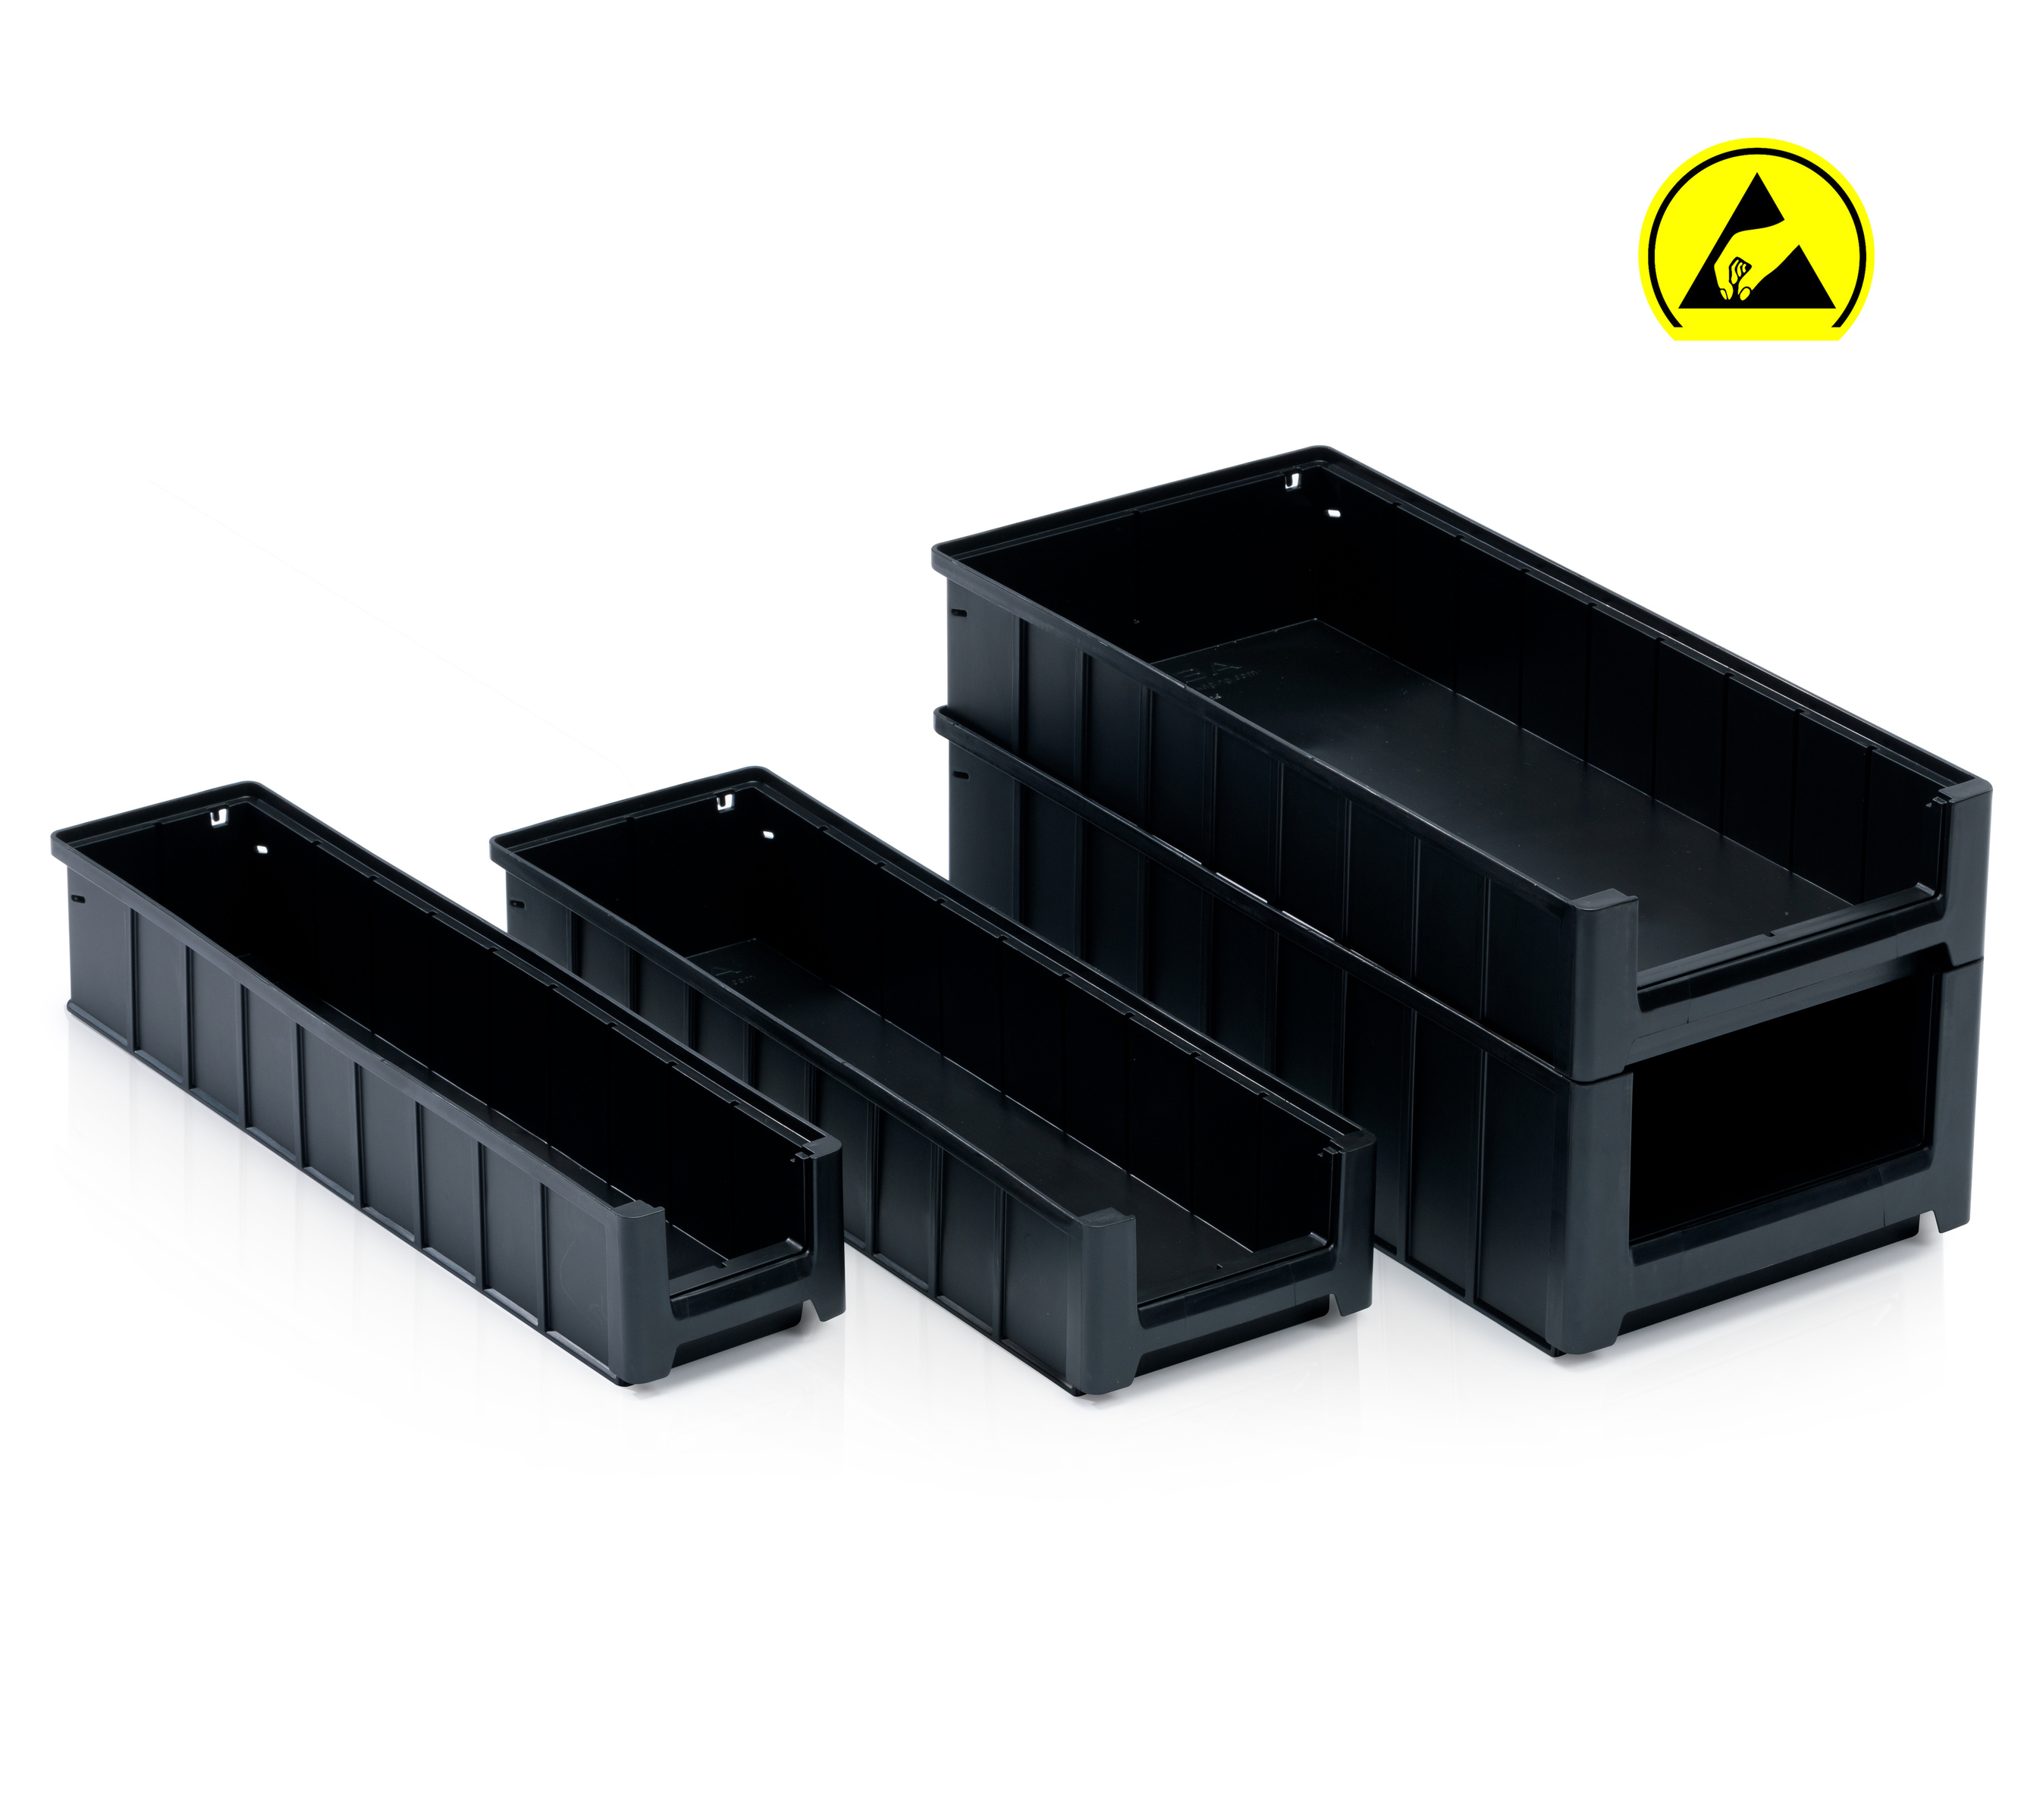 Nowość w asortymencie: Pudełka regałowe ESD do bezpiecznego przechowywania elektroniki.